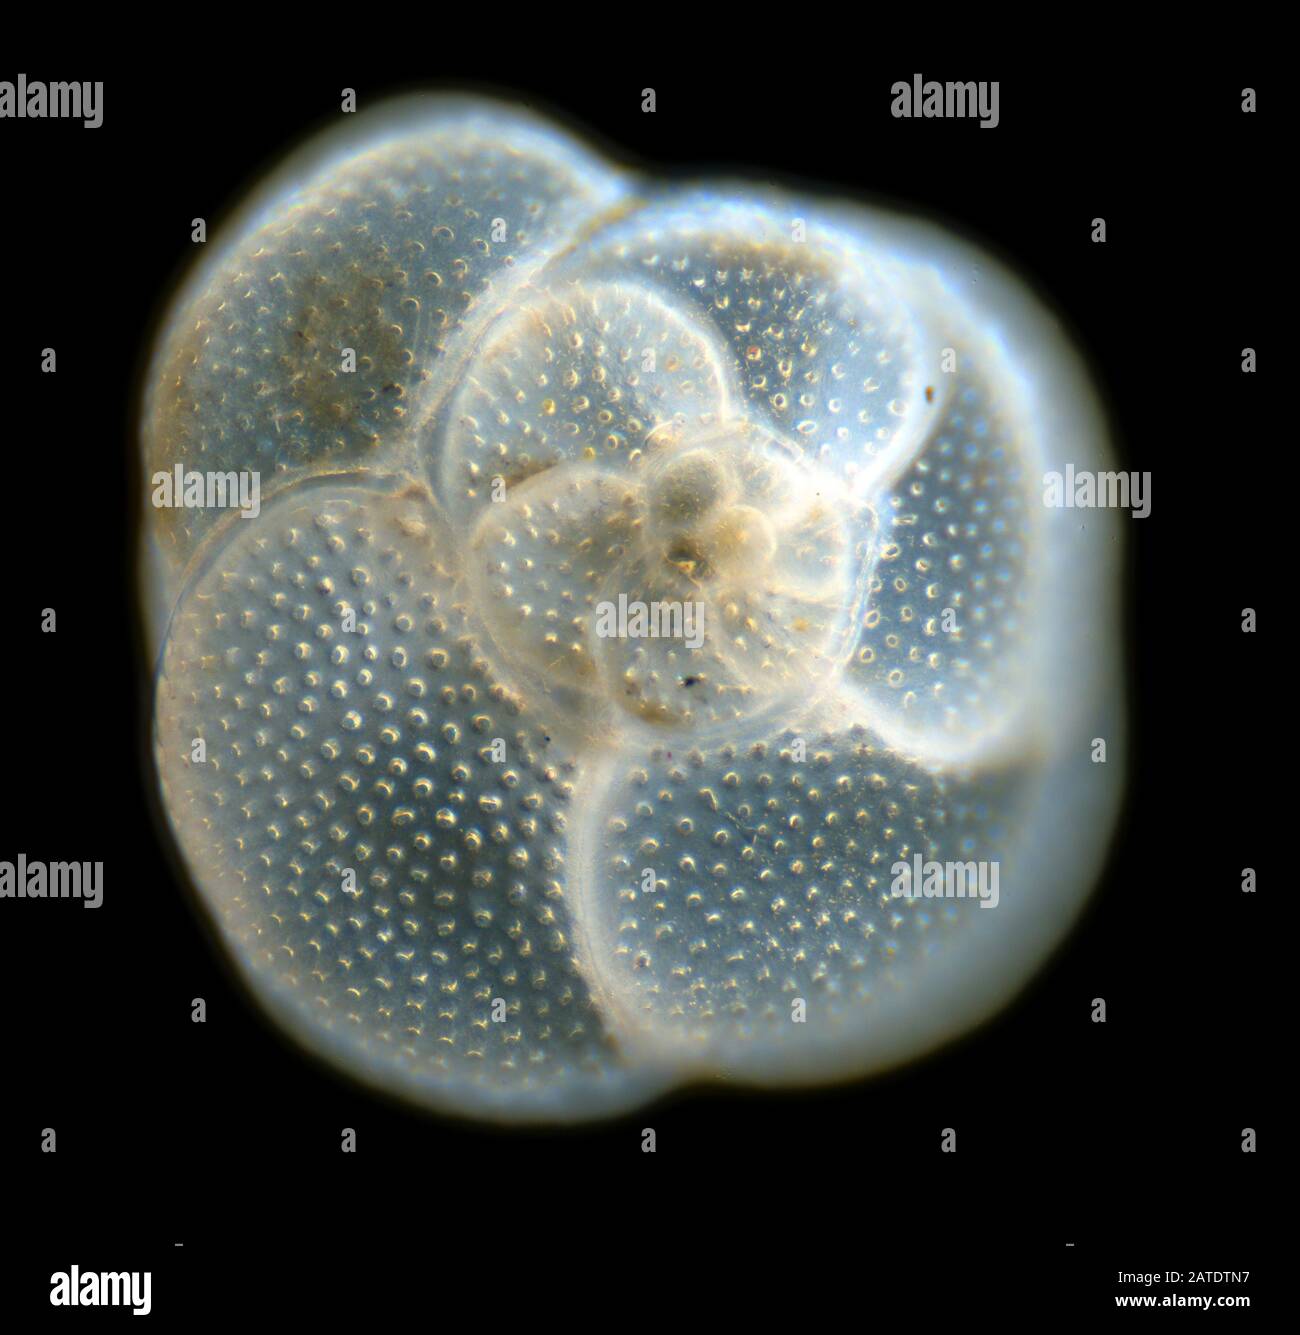 Foramanifera, Rosalina globularis, Swanage, UK Stock Photo